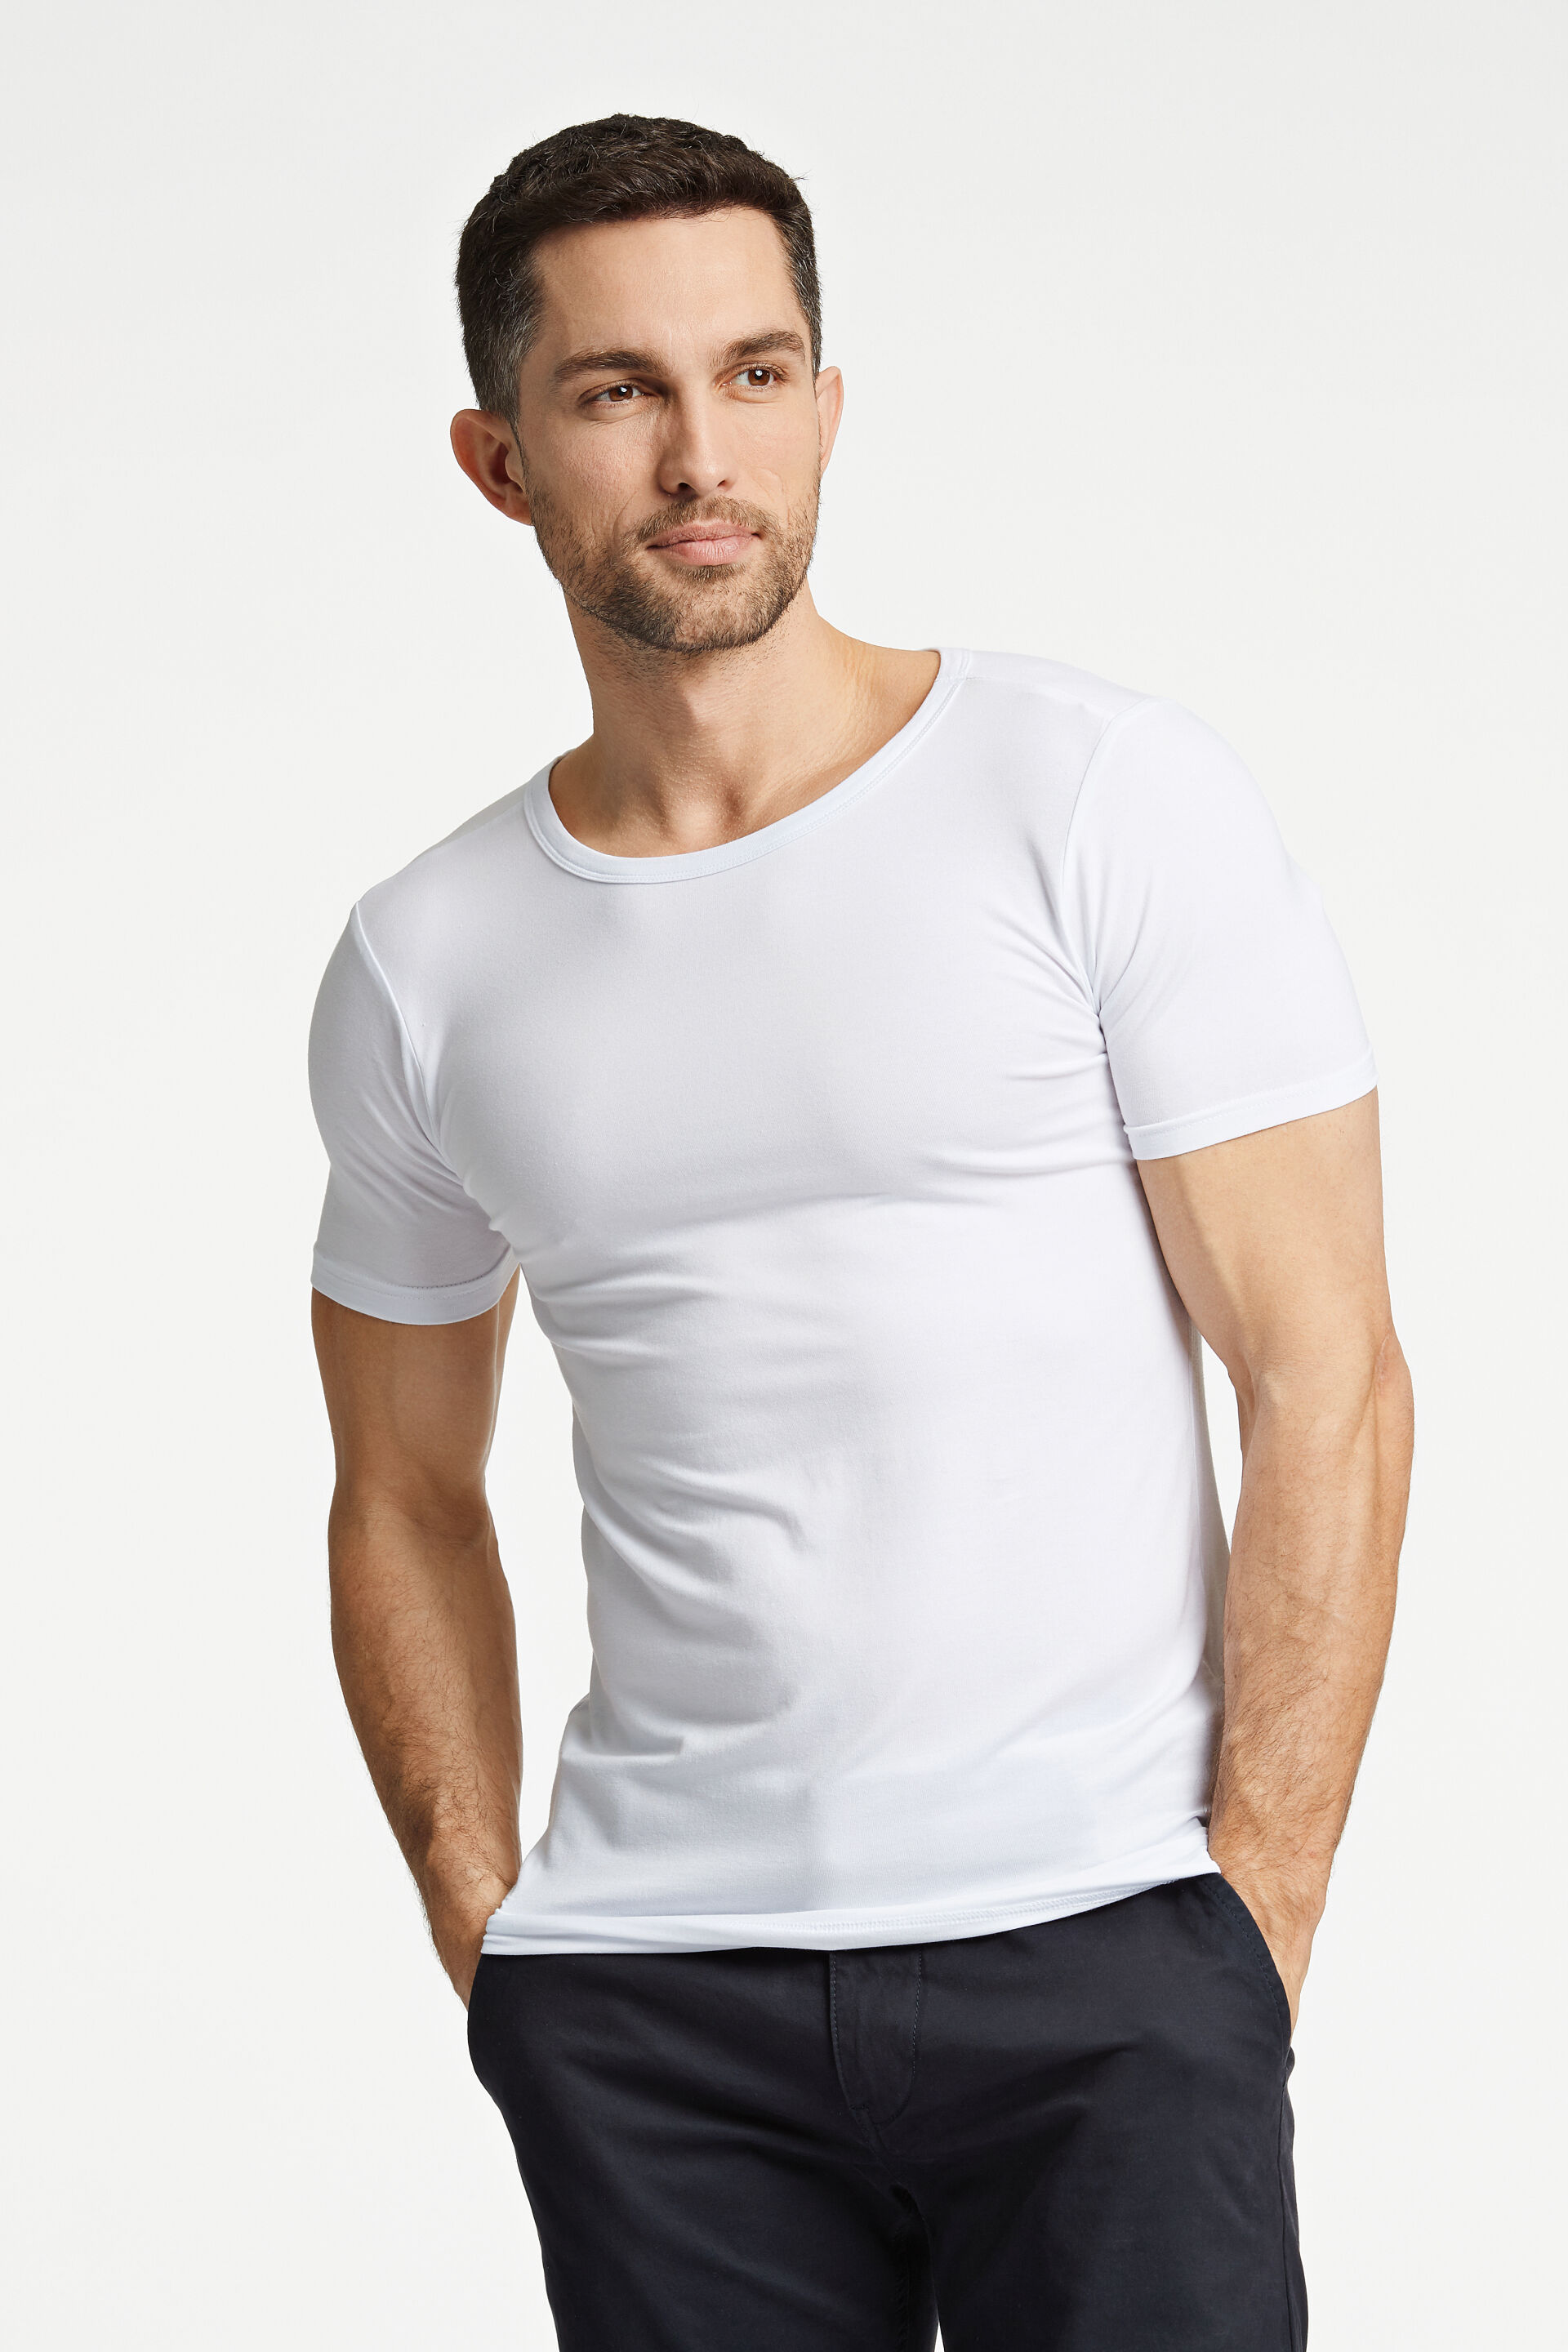 T-shirt T-shirt Weiss 30-48000